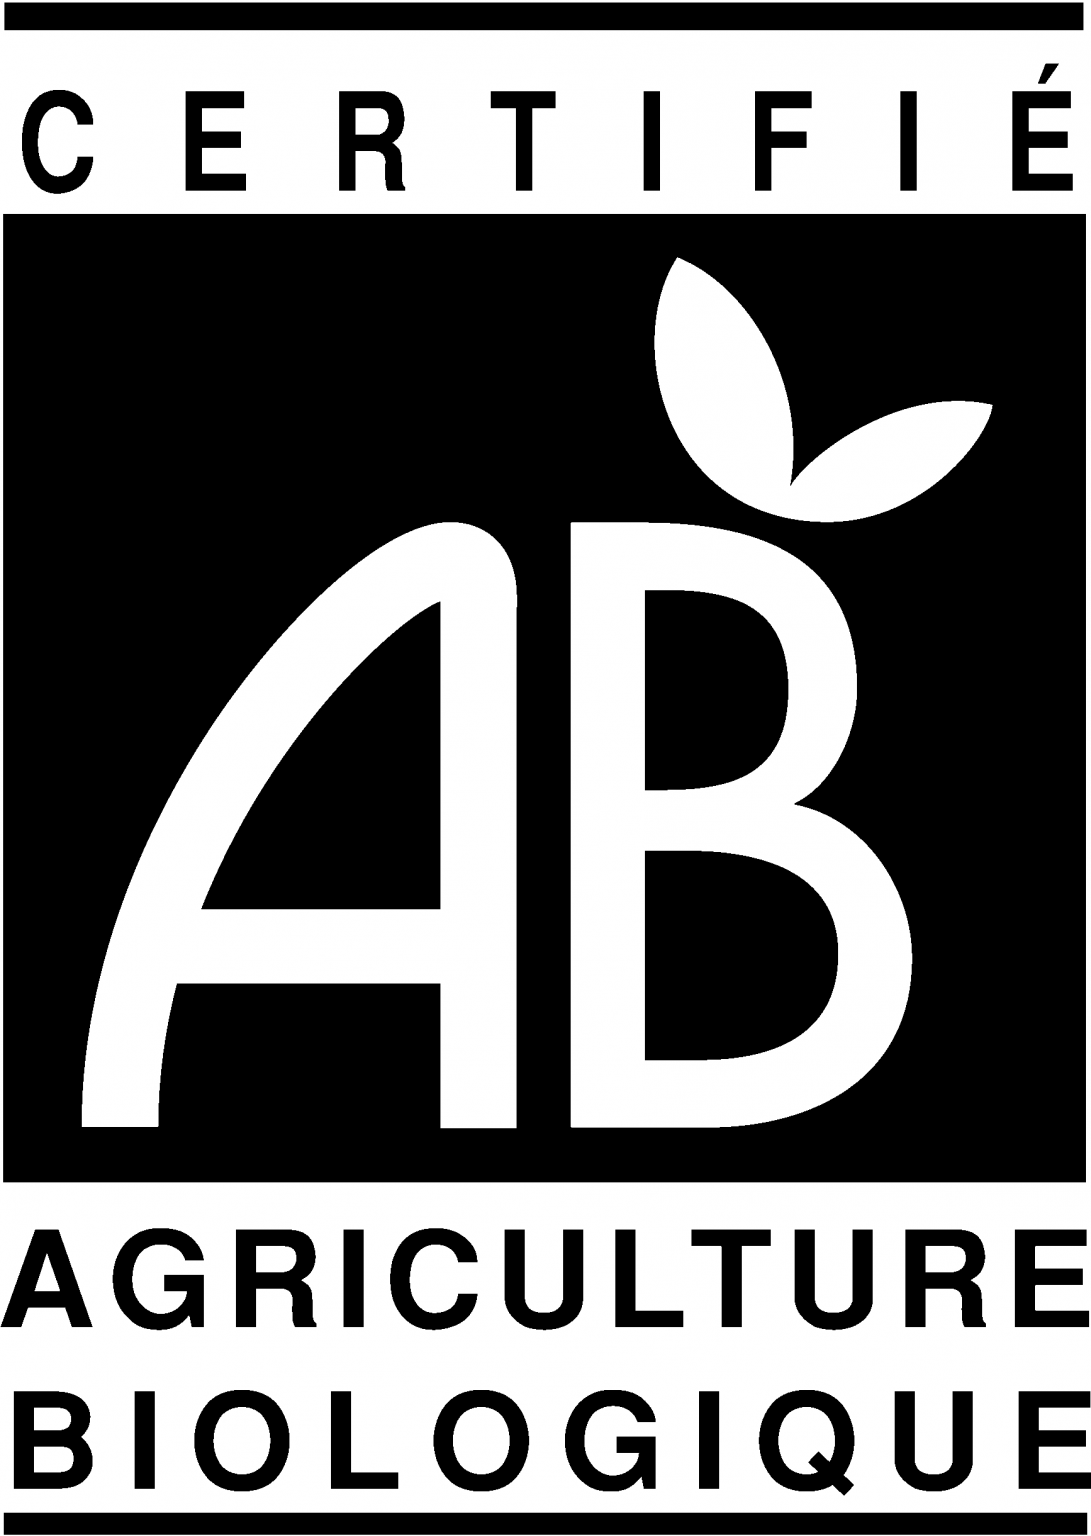 AB_agriculture-biologique-certification-V21-chanvre-france-e1630071904548-1091x1536